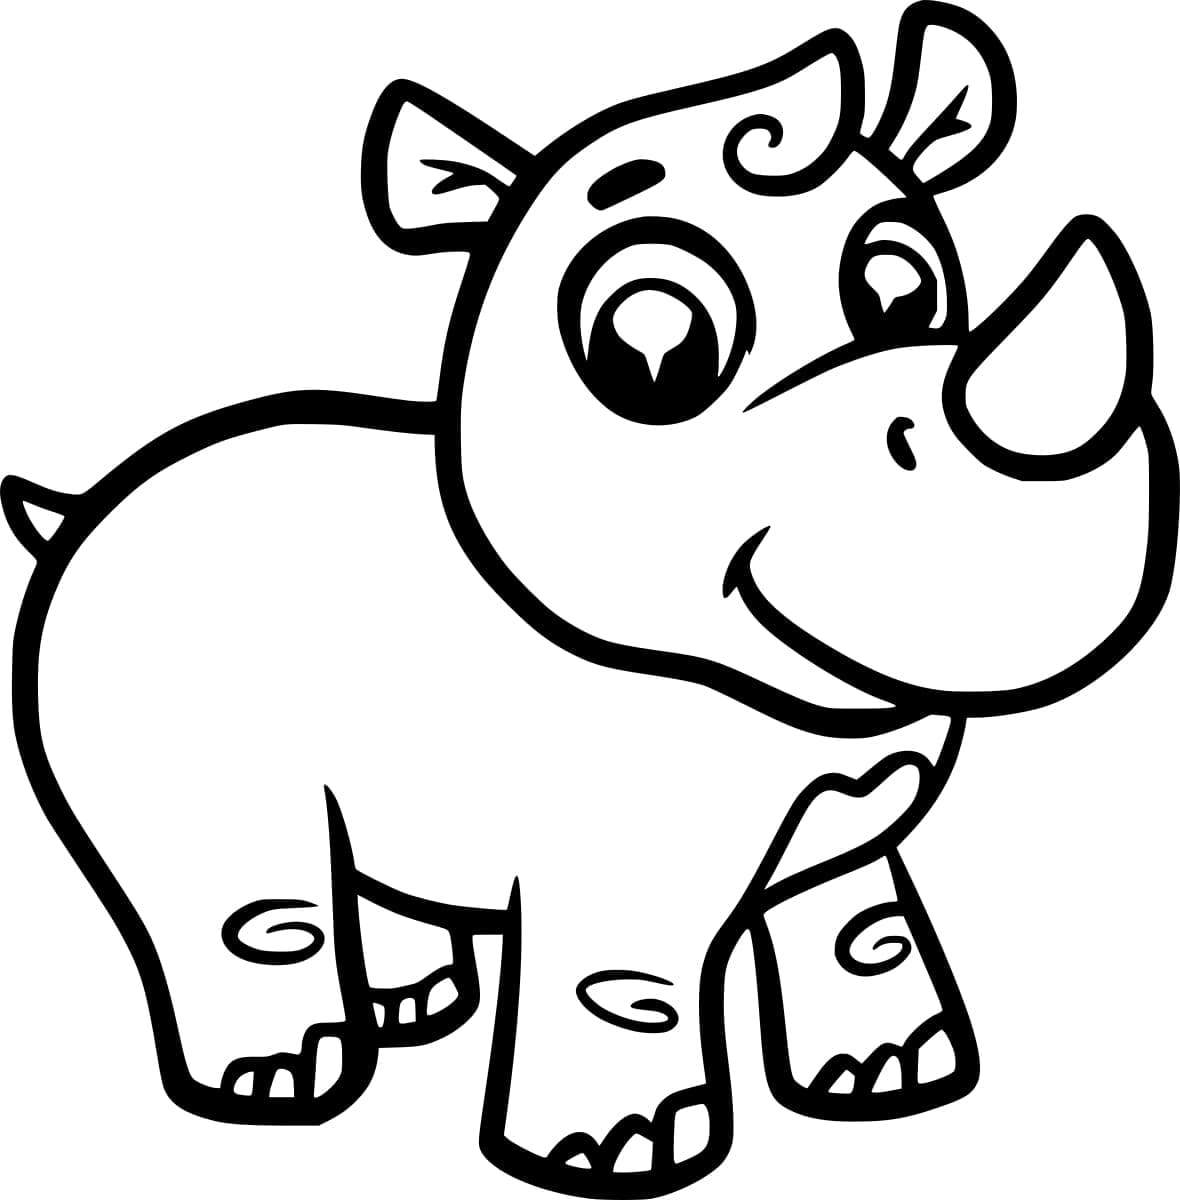 Joli Rhinocéros coloring page